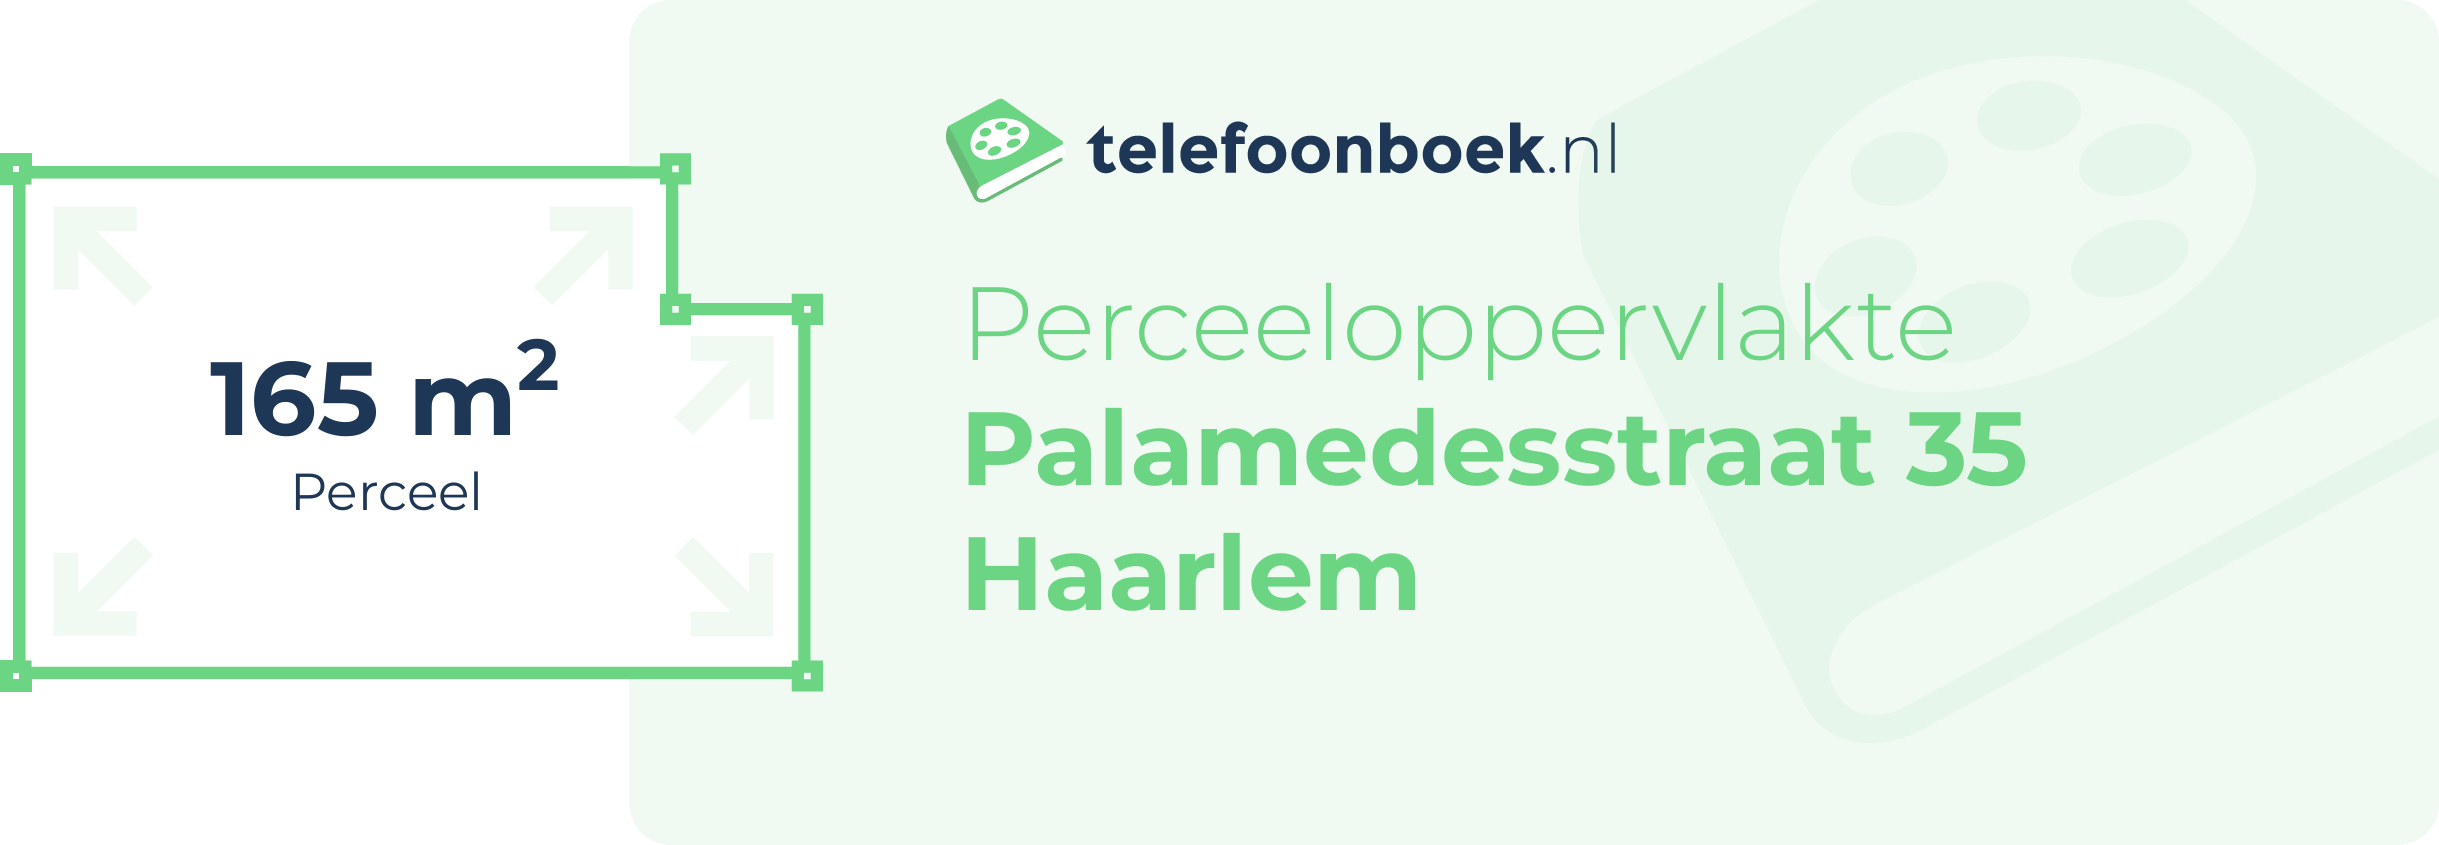 Perceeloppervlakte Palamedesstraat 35 Haarlem